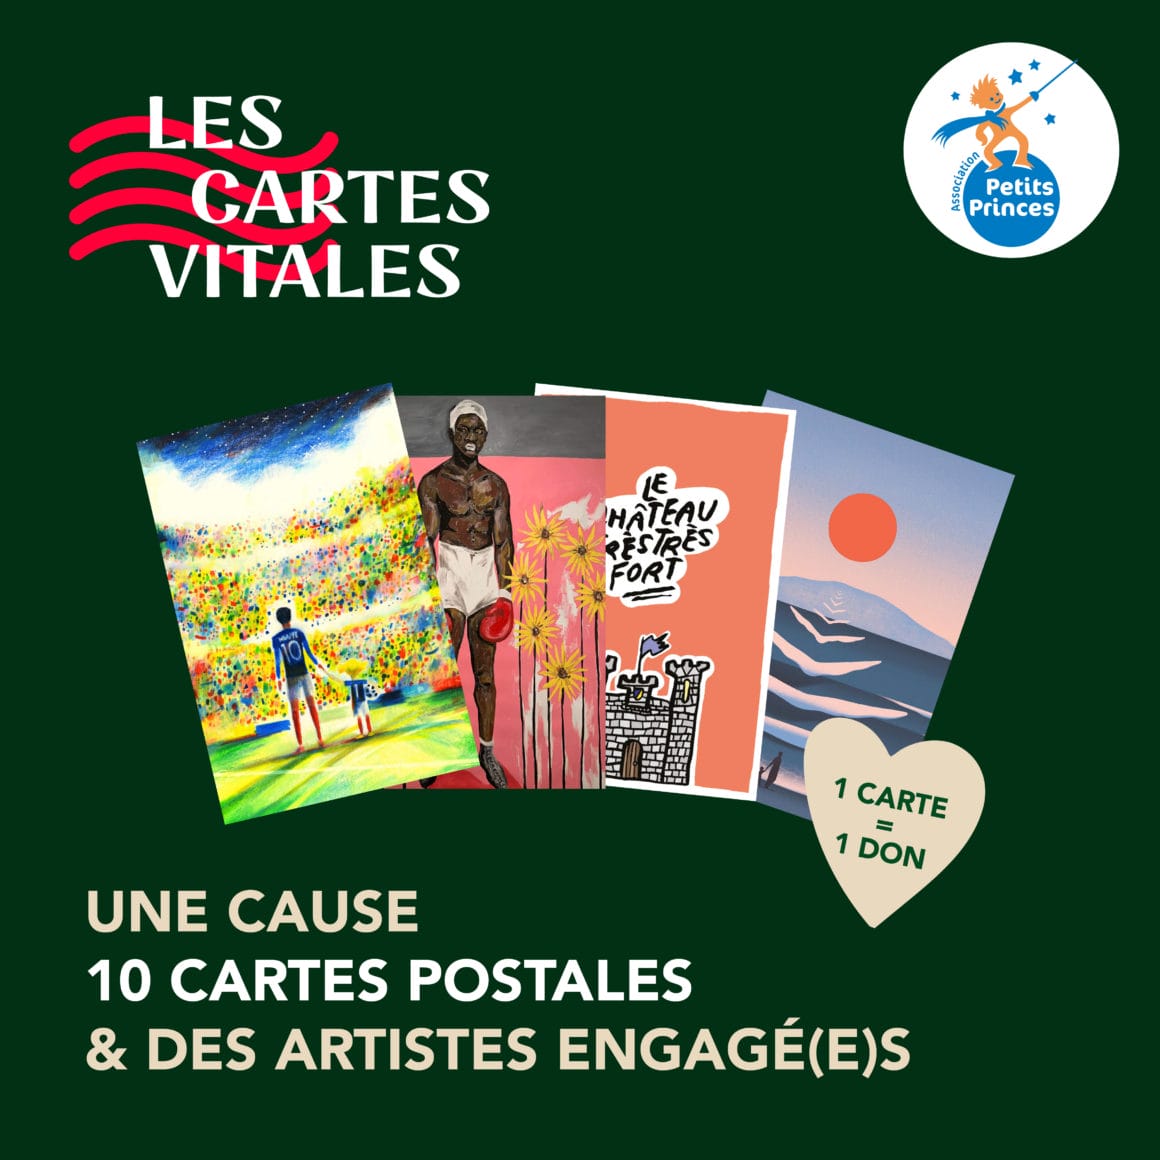 Pour son opération de Noël, Cartes Vitales collabore avec l'association Petits Princes pour soutenir les enfants malades